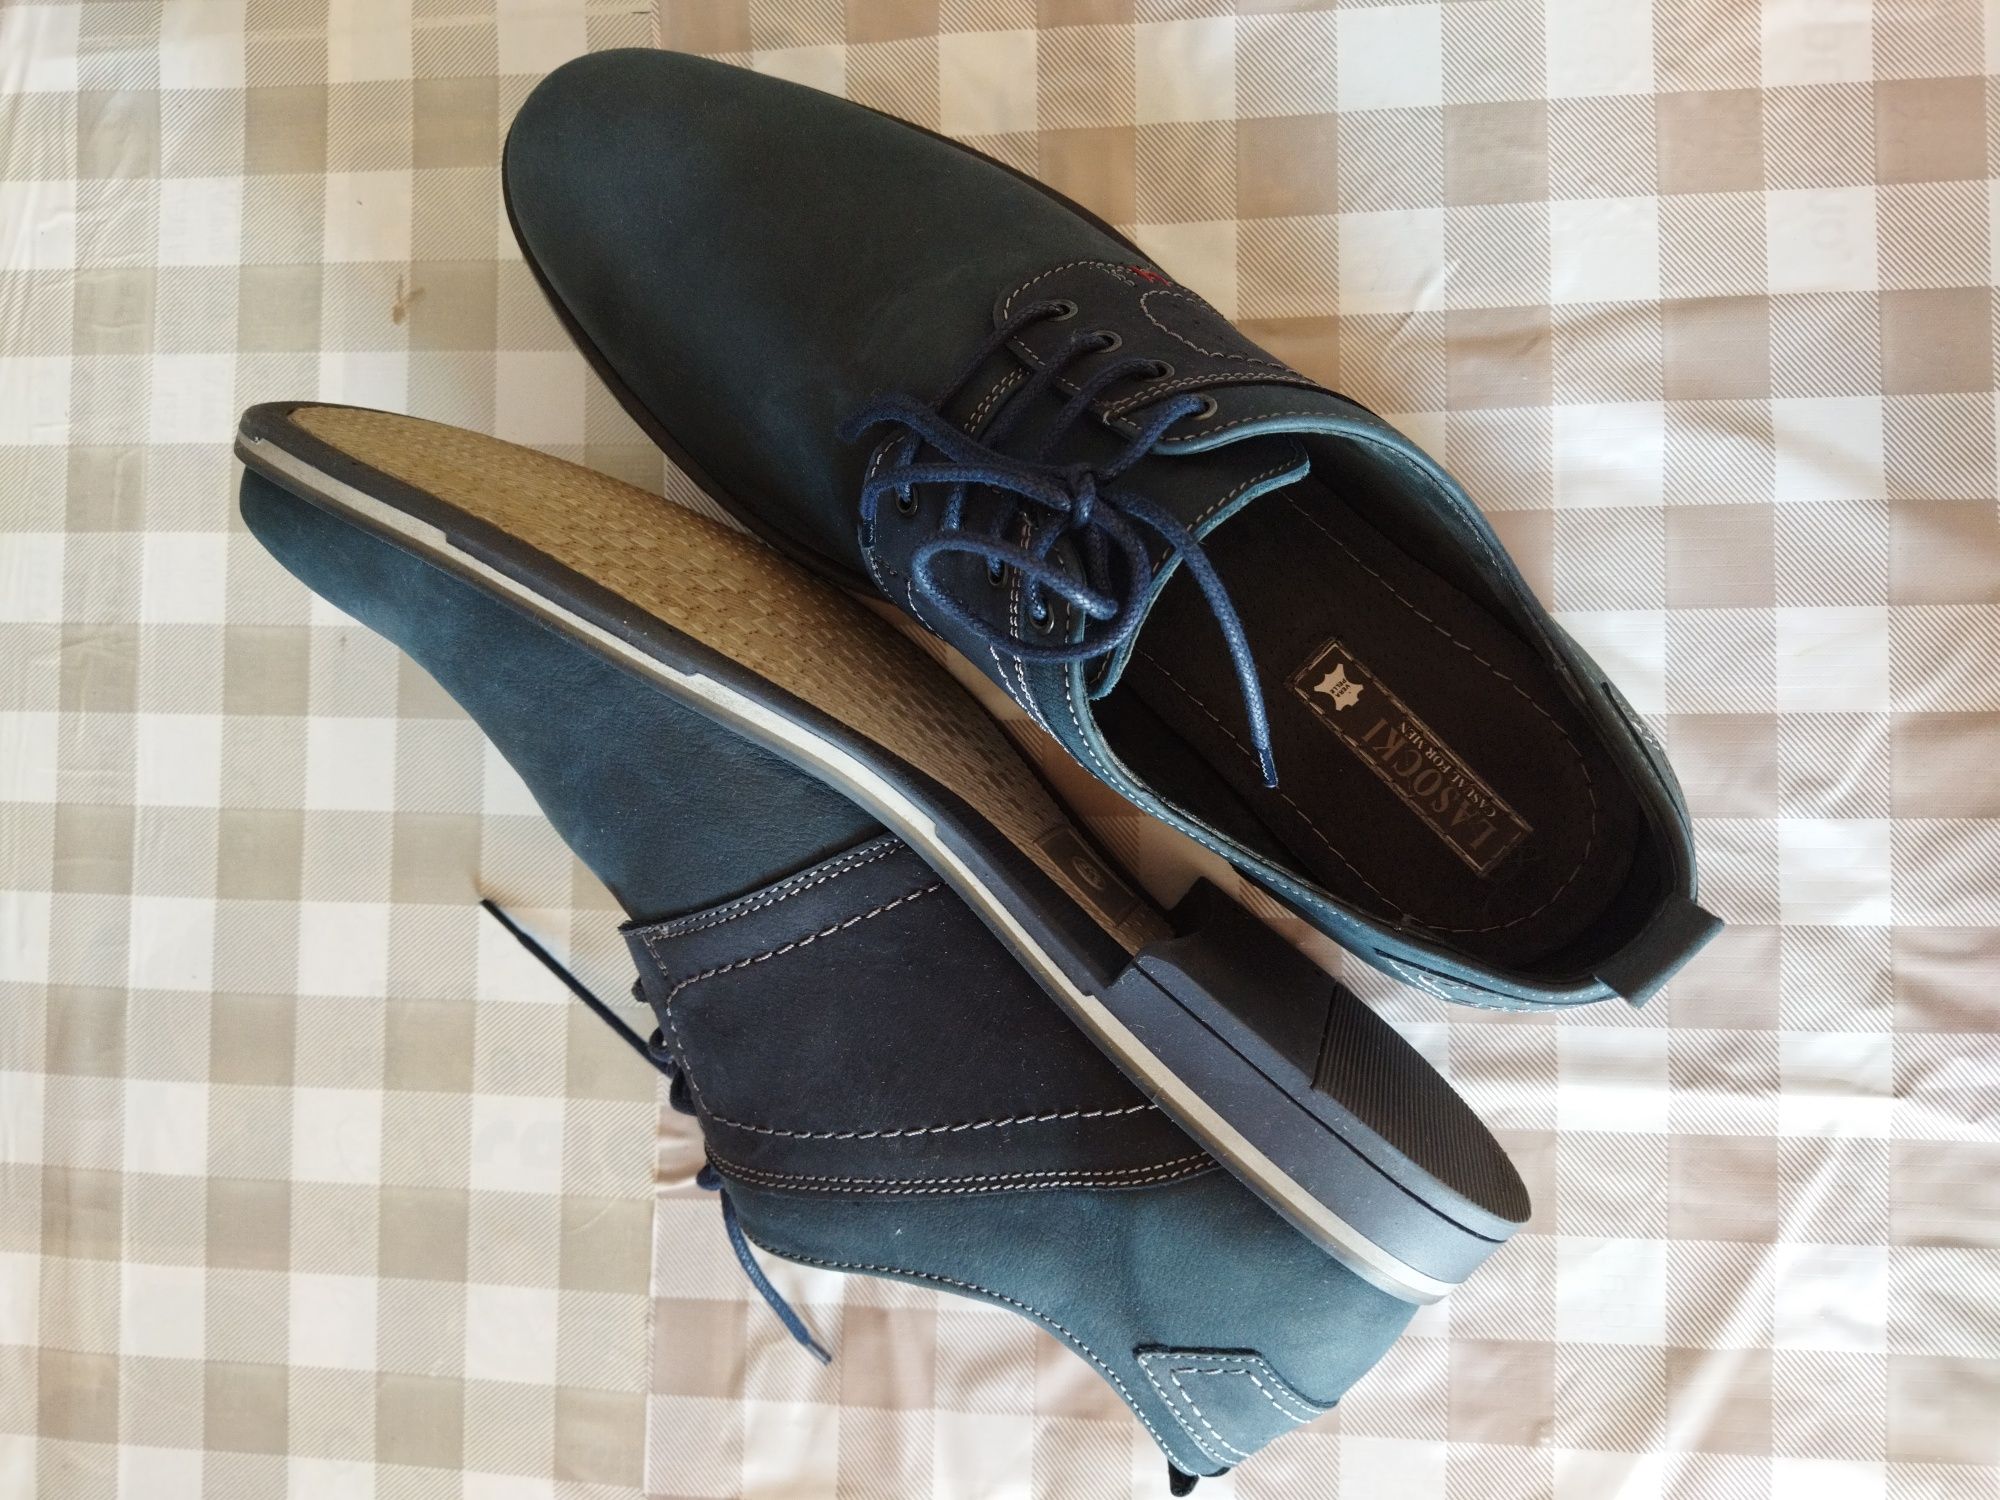 Новые мужские осенние туфли Lasocki 4for men 43 размер